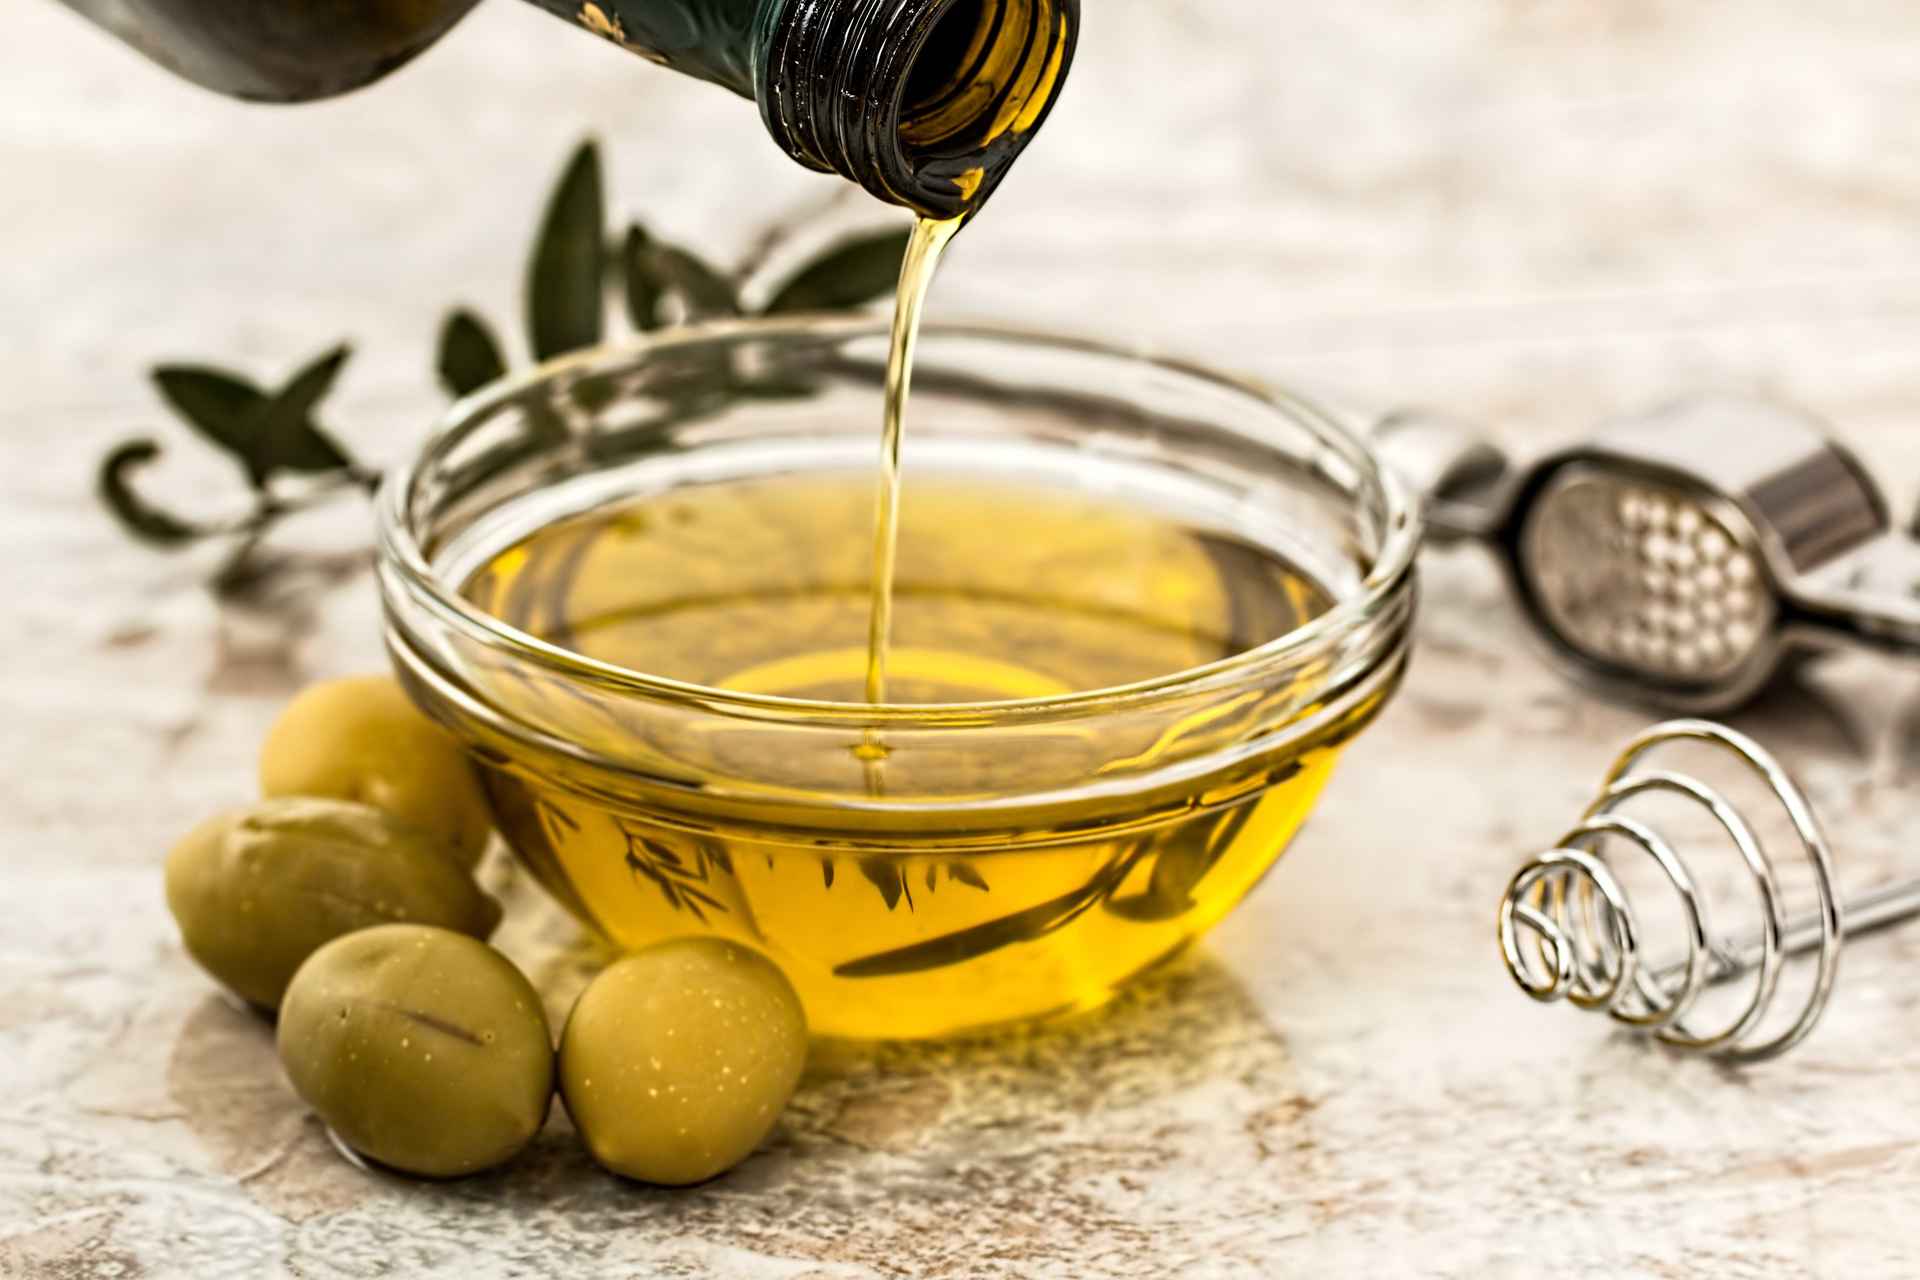 olive-oil-salad-dressing-cooking-olive_已压缩.jpg